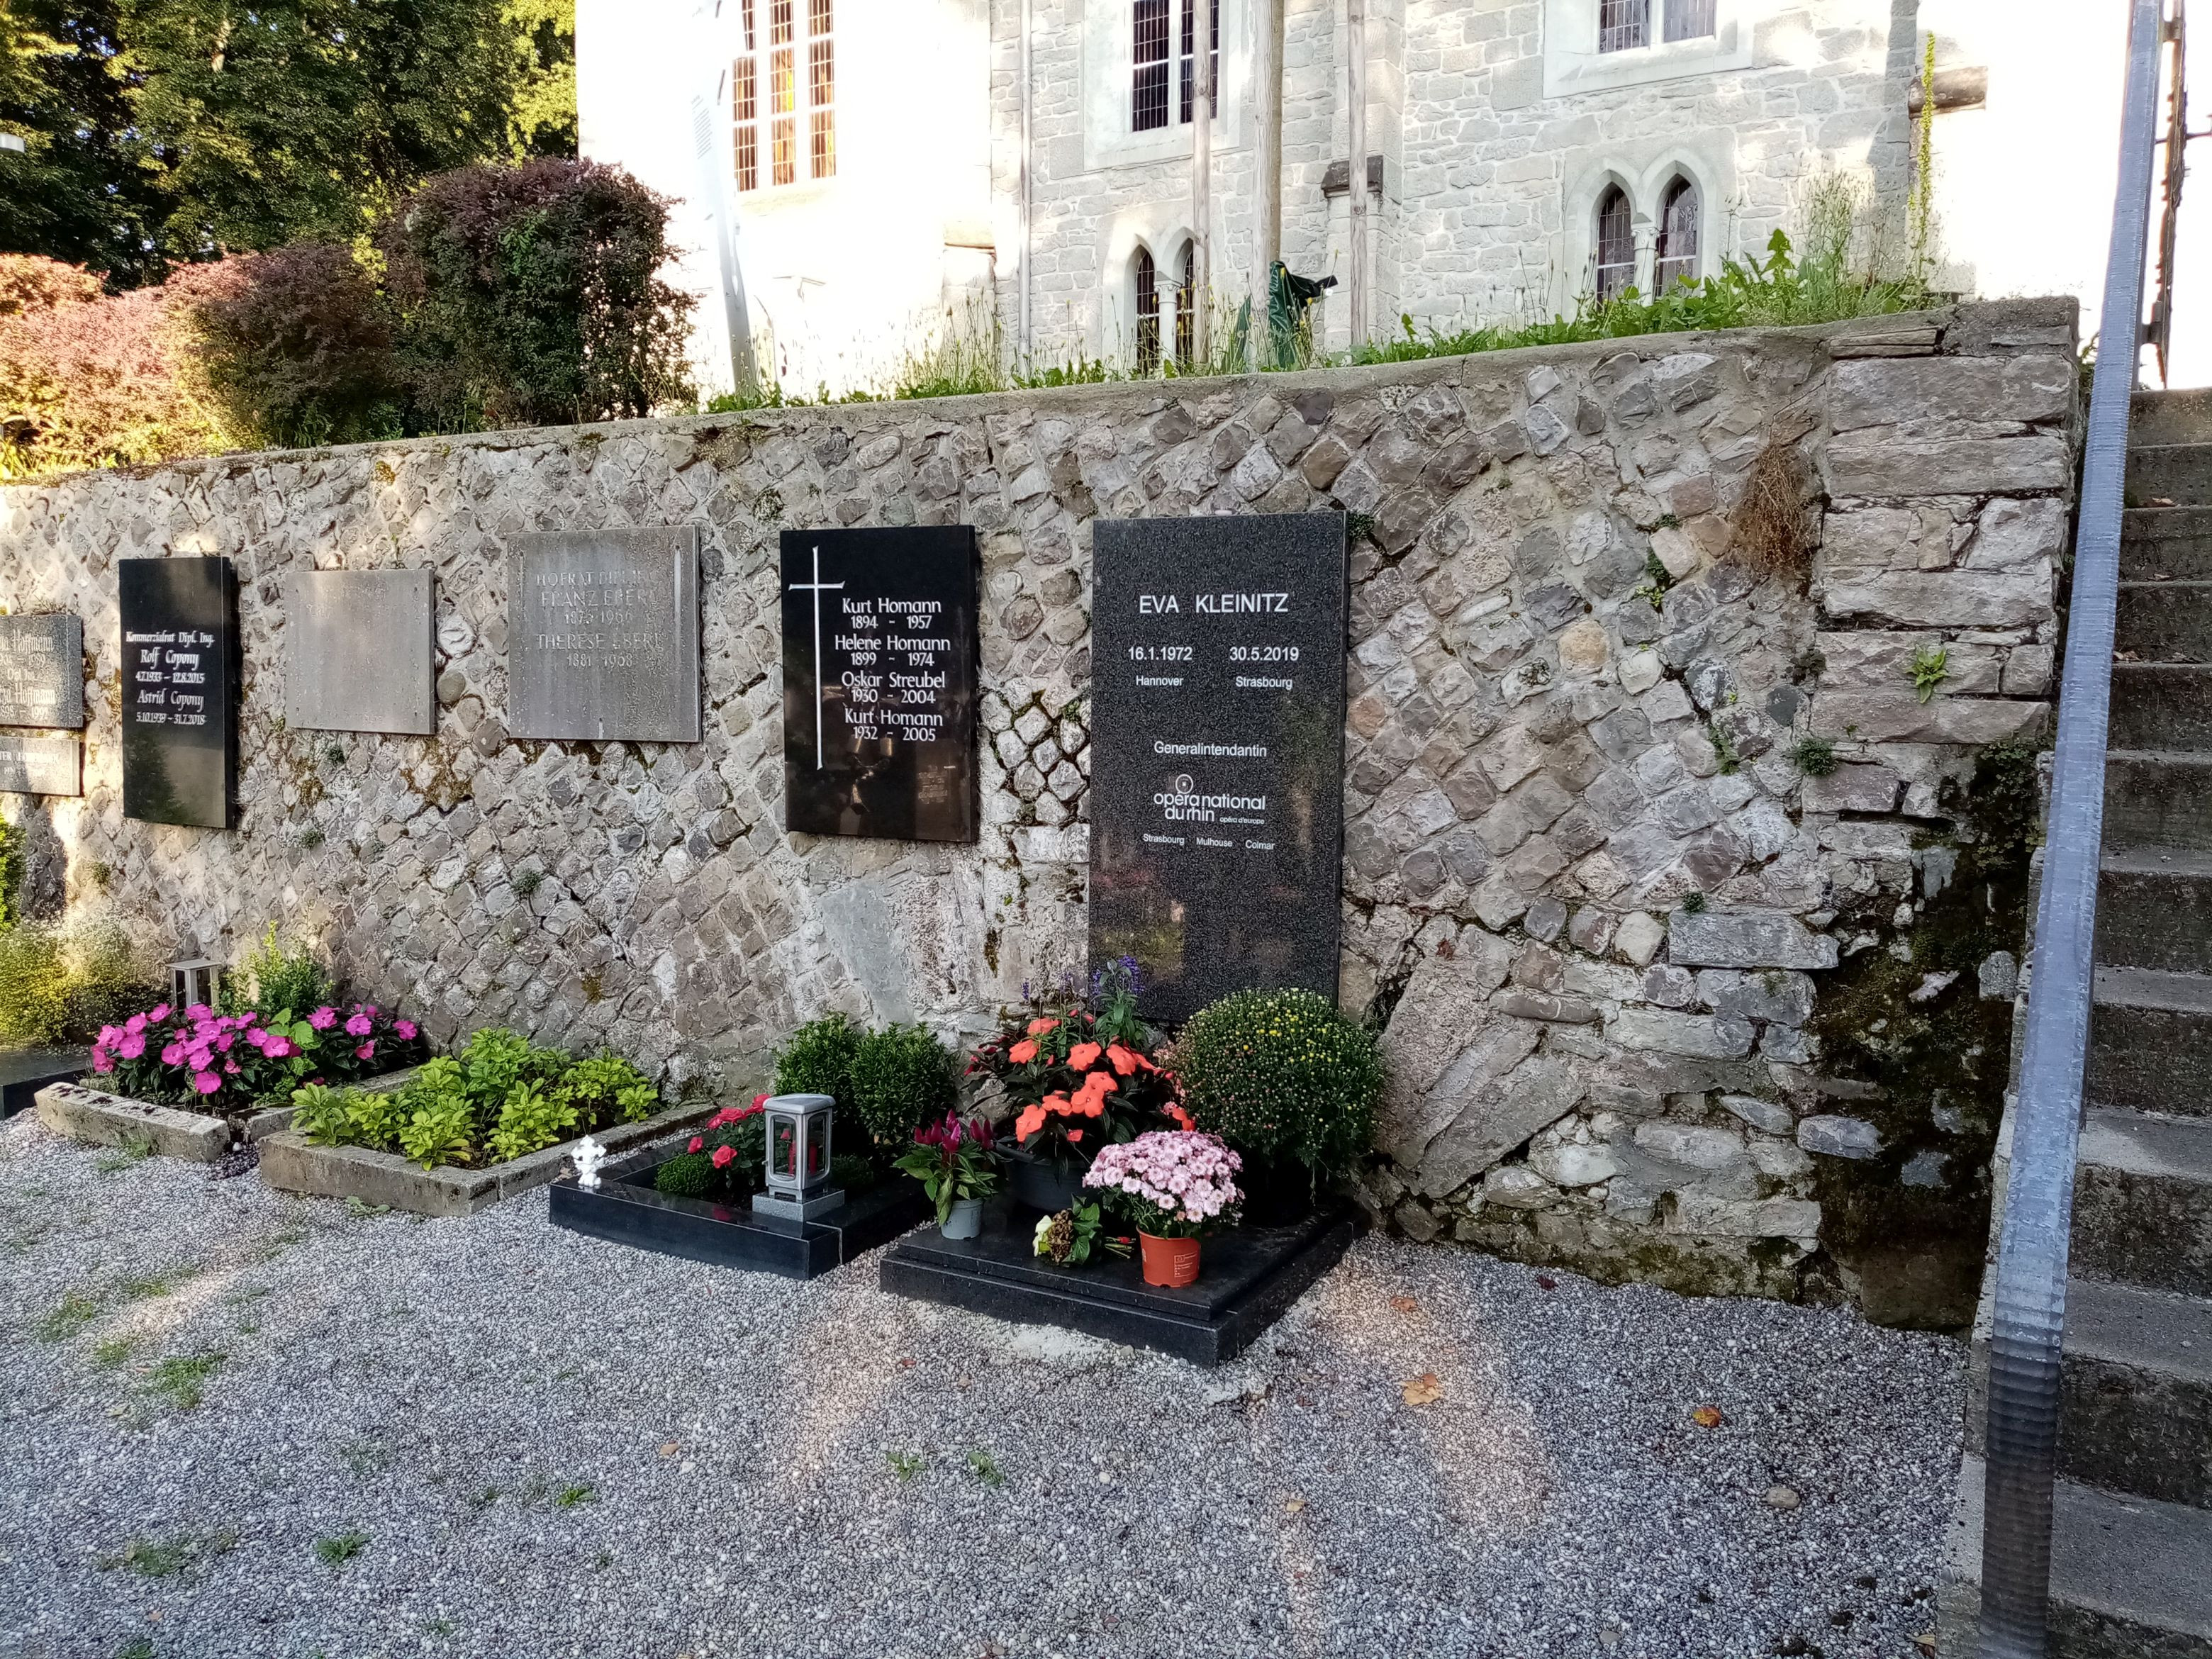 Thermenmauer am evangelischen Friedhof